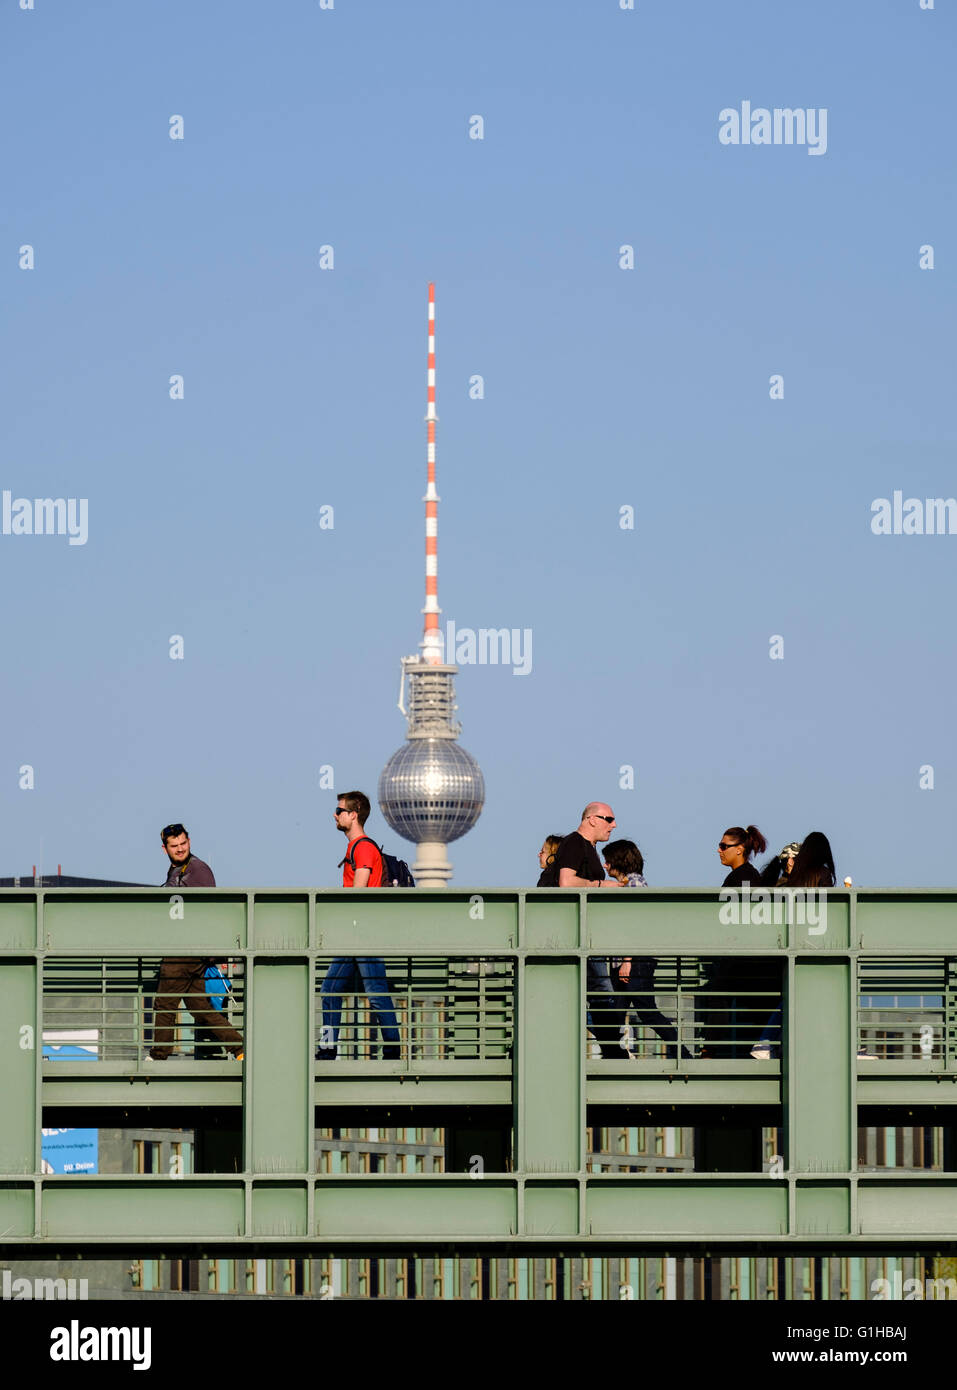 Les piétons marcher sur la passerelle traversant la rivière Spree avec Telecafè , tour de télévision, à l'arrière à Berlin Allemagne Banque D'Images